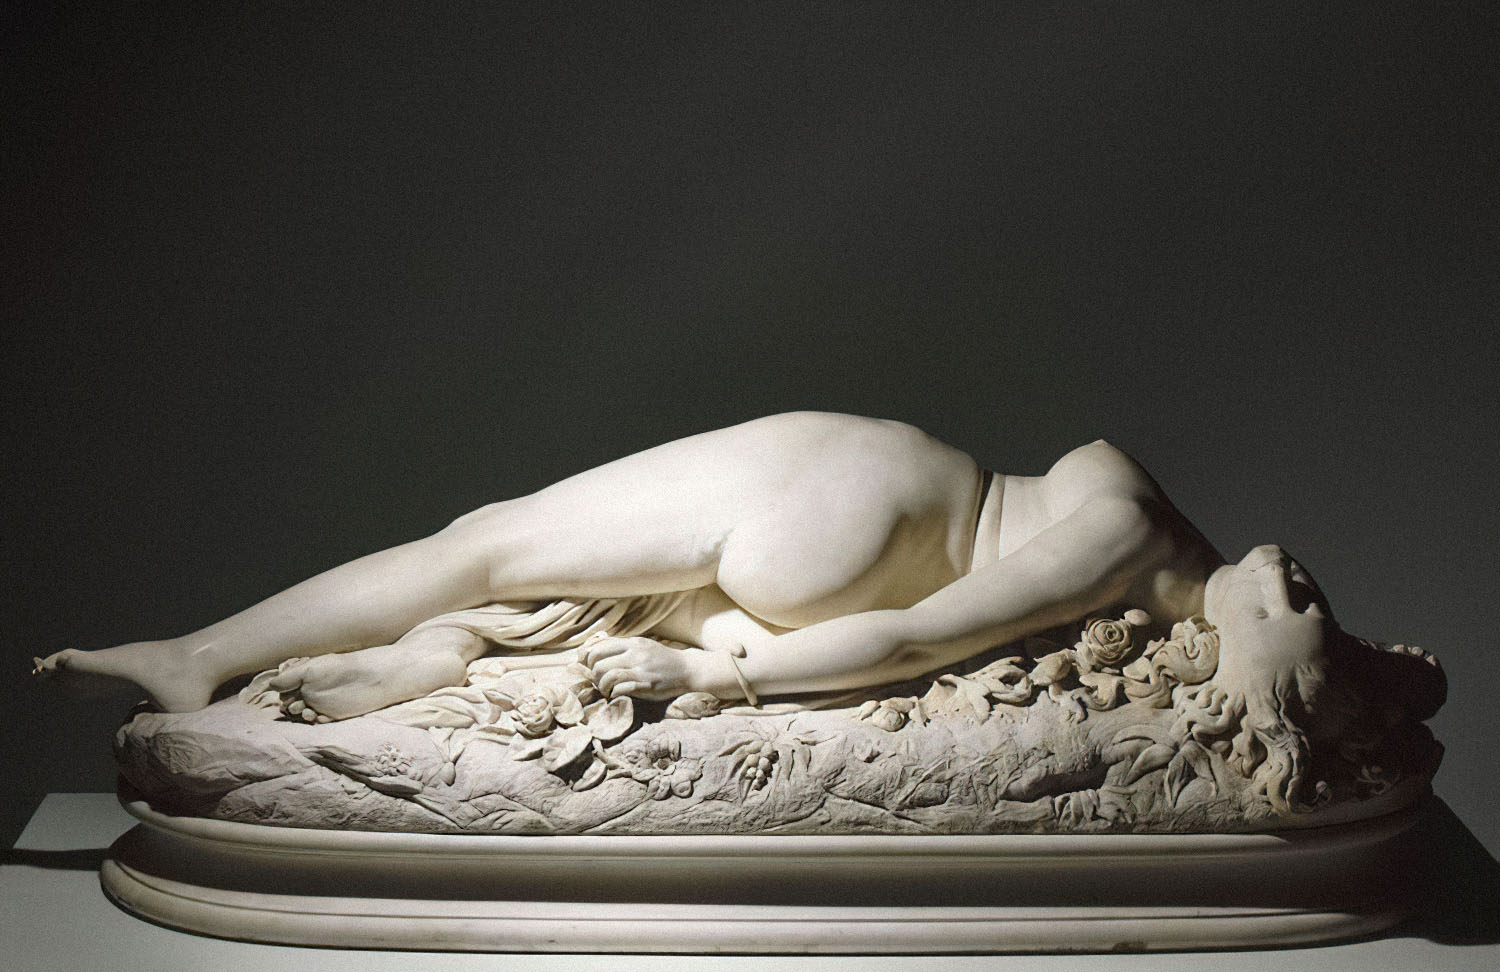 Аполлония Сабатье — «Женщина, ужаленная змеей» (1847). Скульптура Огюста Клезенже, музей Орсе. Фото: PRESSE RMN